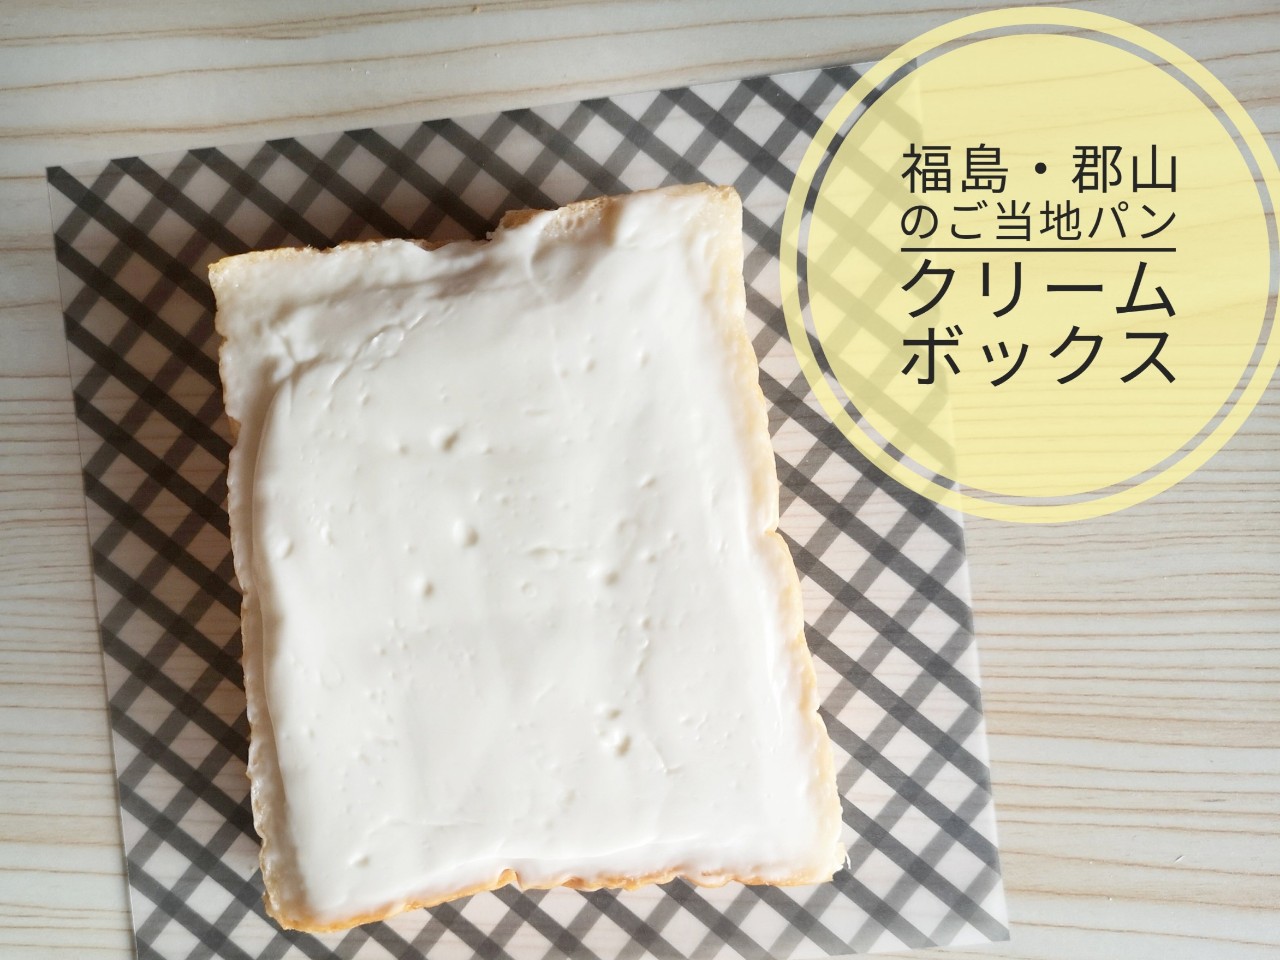 福島県郡山市のご当地パン クリームボックス とは ワッフル専門店 モンリブラン のこだわりの味 実食ルポ Tabizine 人生に旅心を